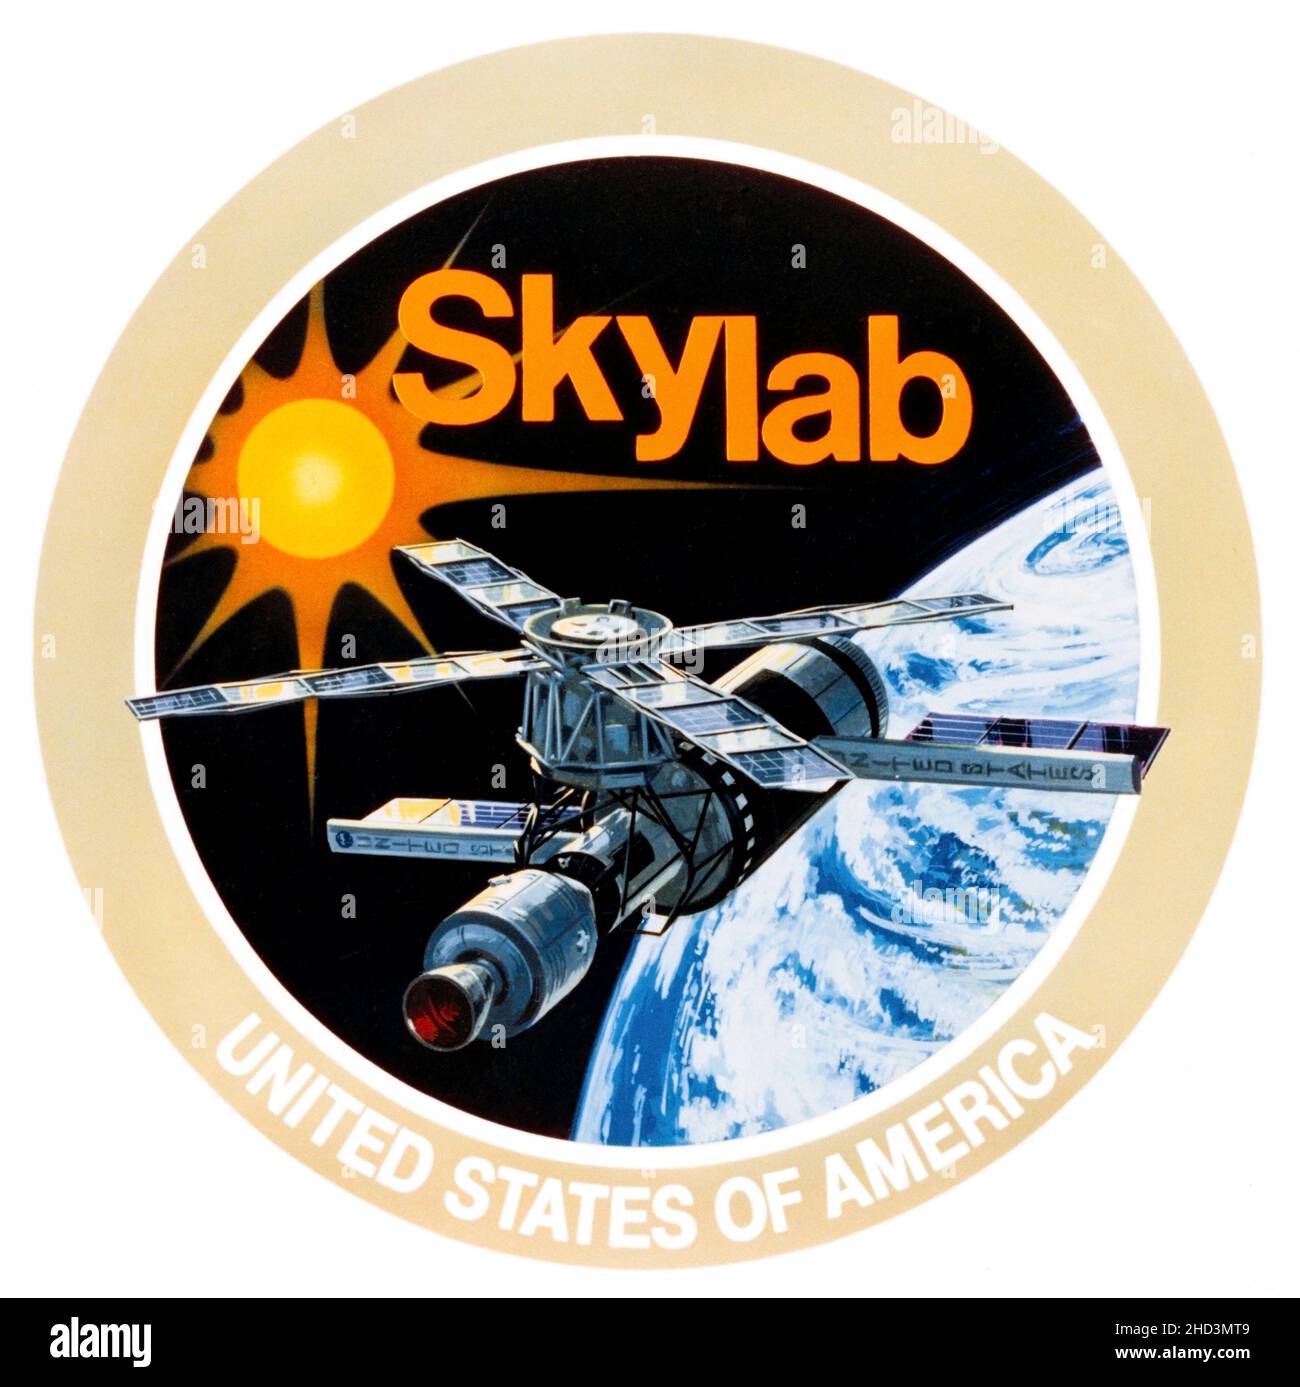 (Mai 1973) --- il s'agit de l'emblème officiel du programme Skylab de la National Aeronautics and Space Administration (NASA).L'emblème représente le groupe de stations spatiales Skylab des États-Unis en orbite terrestre, le soleil en arrière-plan.Skylab évaluera les systèmes et les techniques conçus pour recueillir de l'information sur les ressources de la Terre et les problèmes environnementaux.Les télescopes solaires augmenteront la connaissance de l'homme de notre soleil et de la multitude d'influences solaires sur l'environnement terrestre.Les expériences médicales augmenteront la connaissance de l'homme lui-même et de sa relation avec son environnement terrestre et l'adaptabilité t Banque D'Images